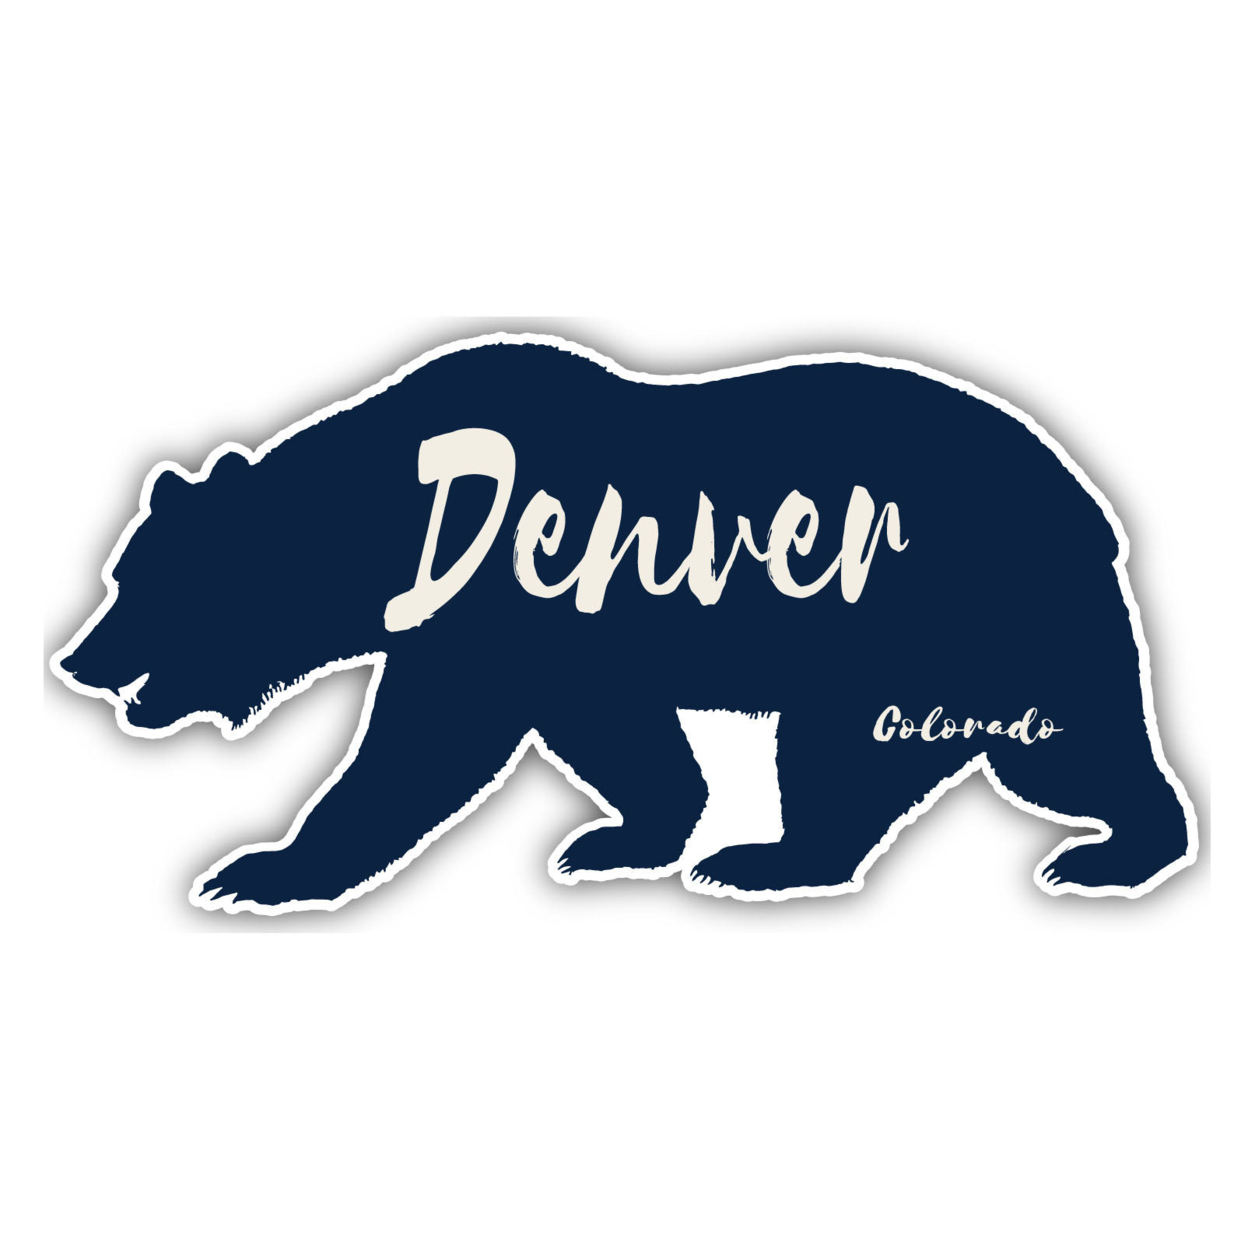 Denver Colorado Souvenir Decorative Stickers (Choose Theme And Size) - Single Unit, 4-Inch, Tent